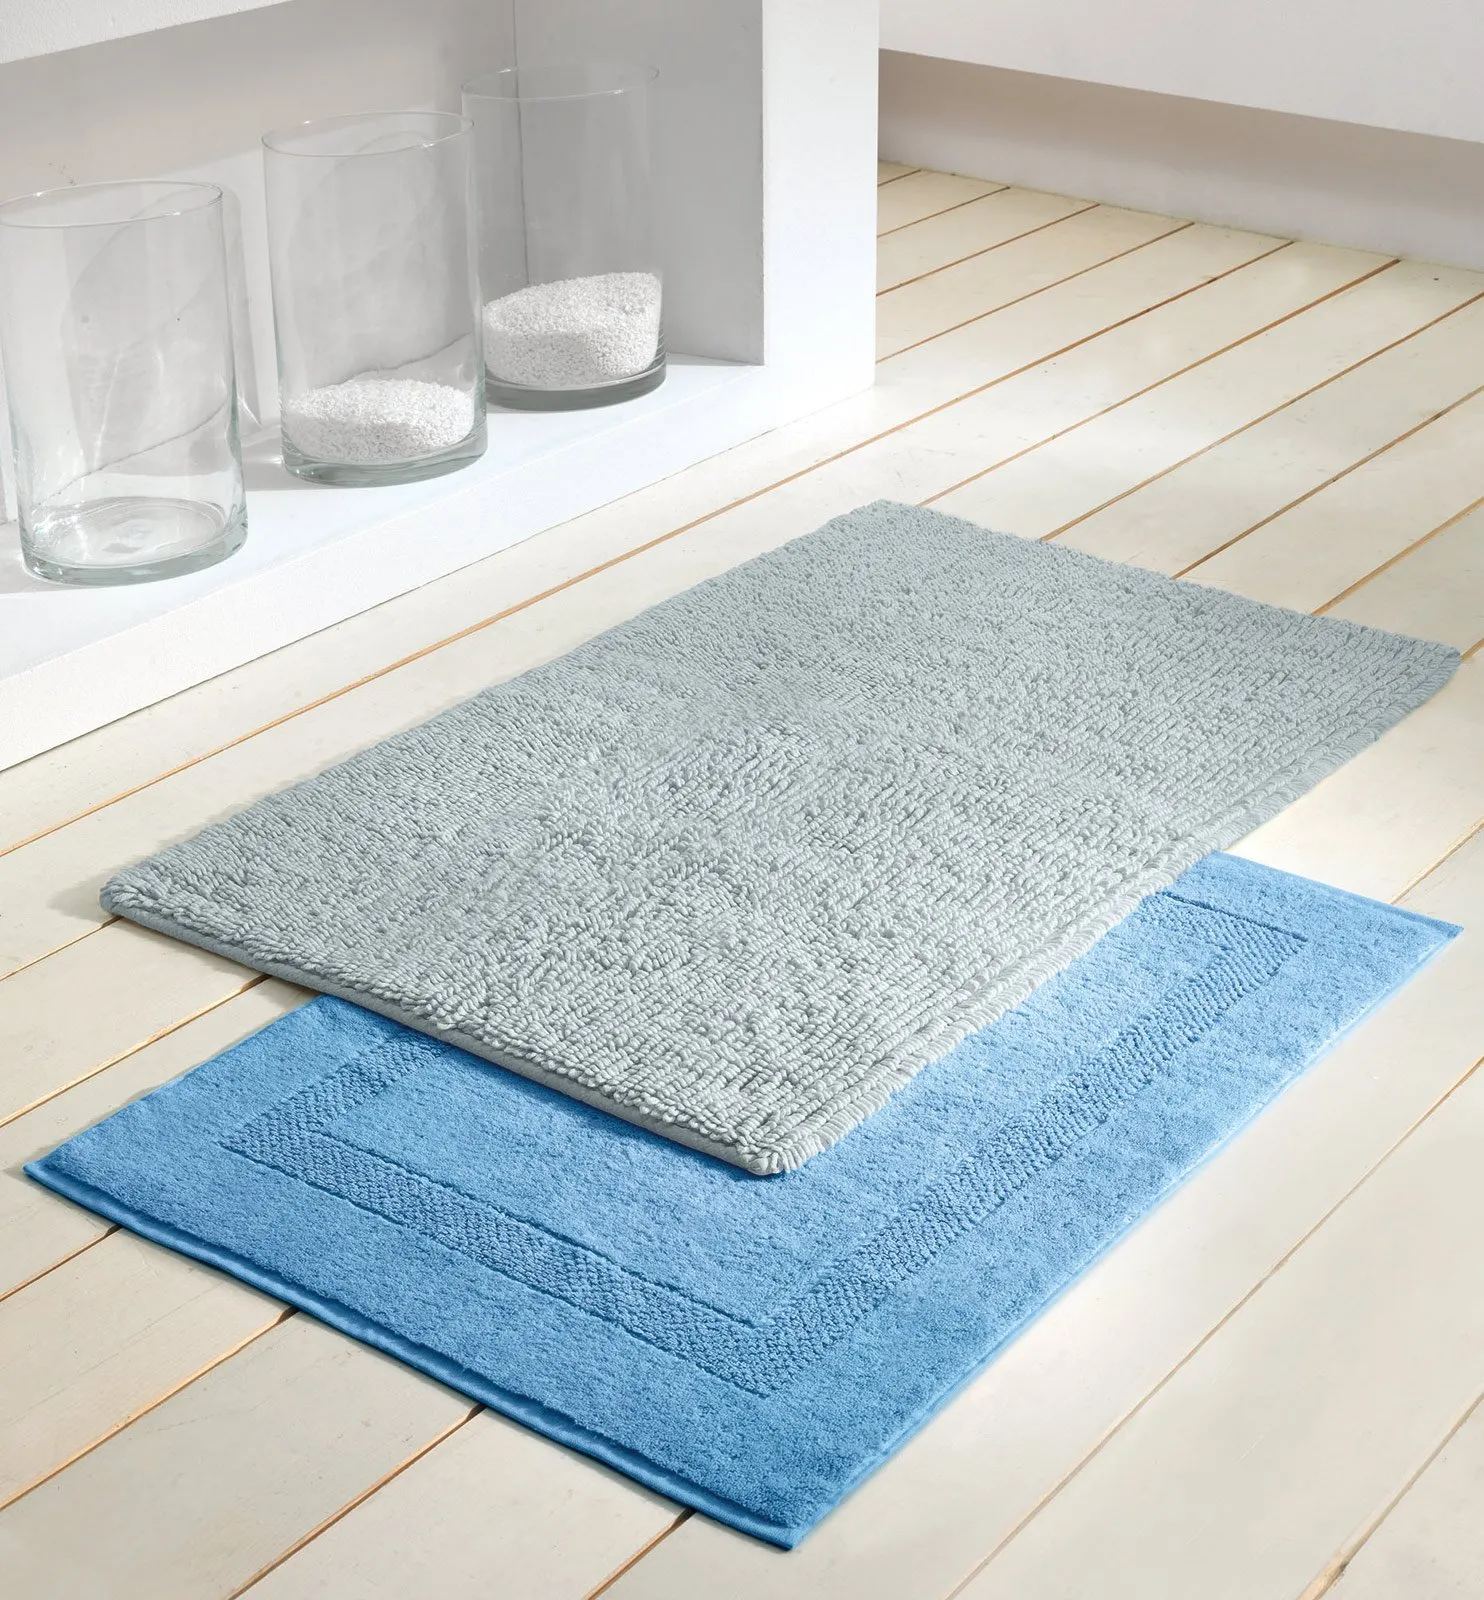 I migliori 5 tappeti da bagno 100% cotone già scelti per te